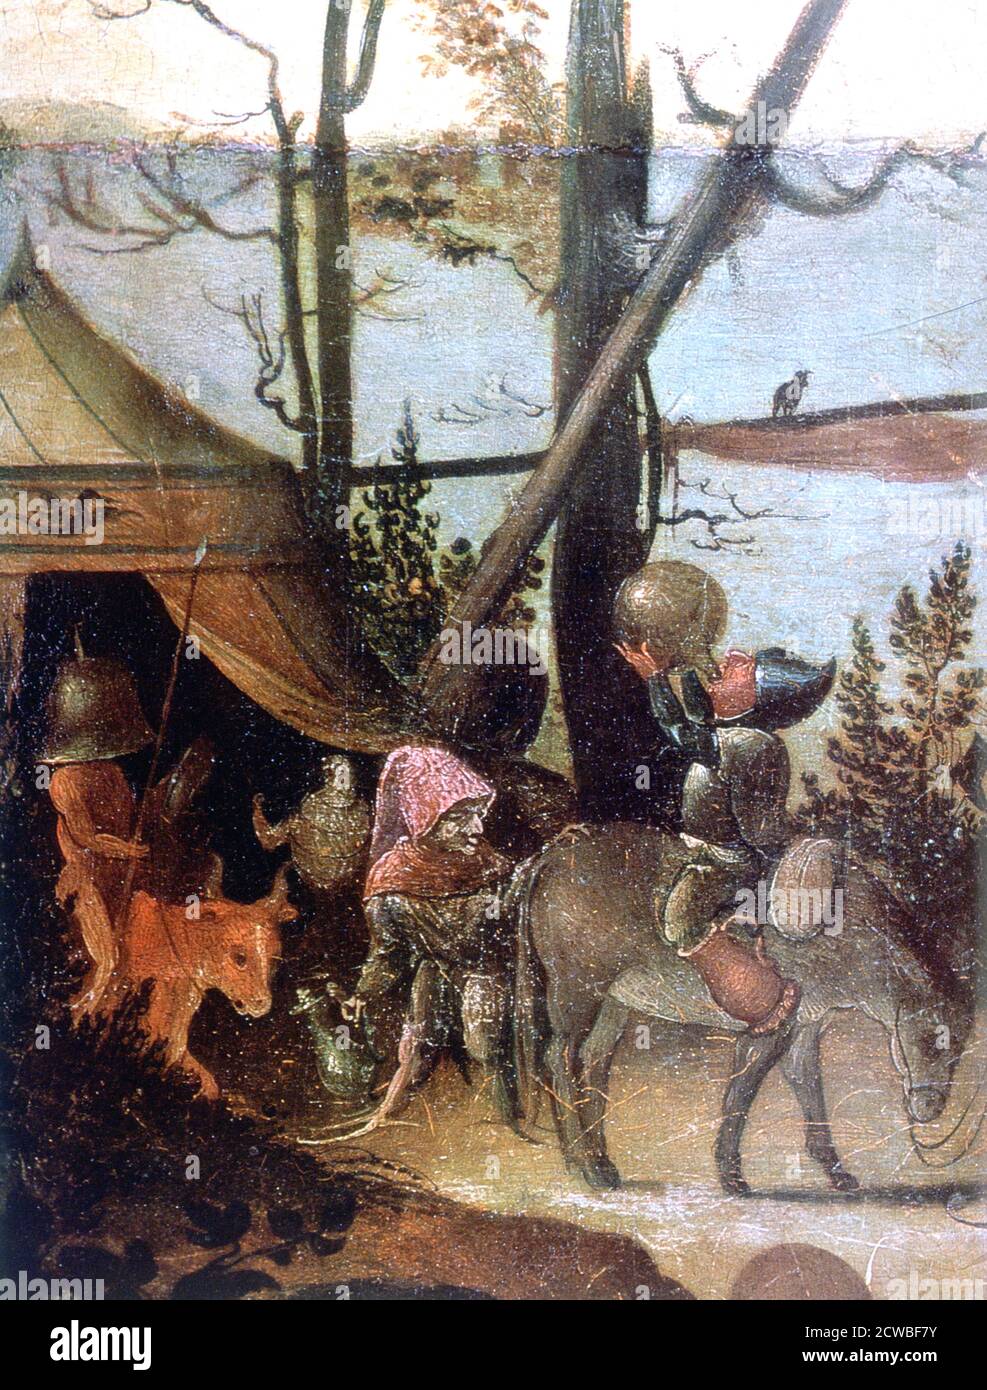 Landschaftsbild, Legende von Saint Christopher', c1500-1559, Künstler: Jan Mandyn. Der Heilige Christopher ist ein von den Katholiken verehrter heiliger. Stockfoto